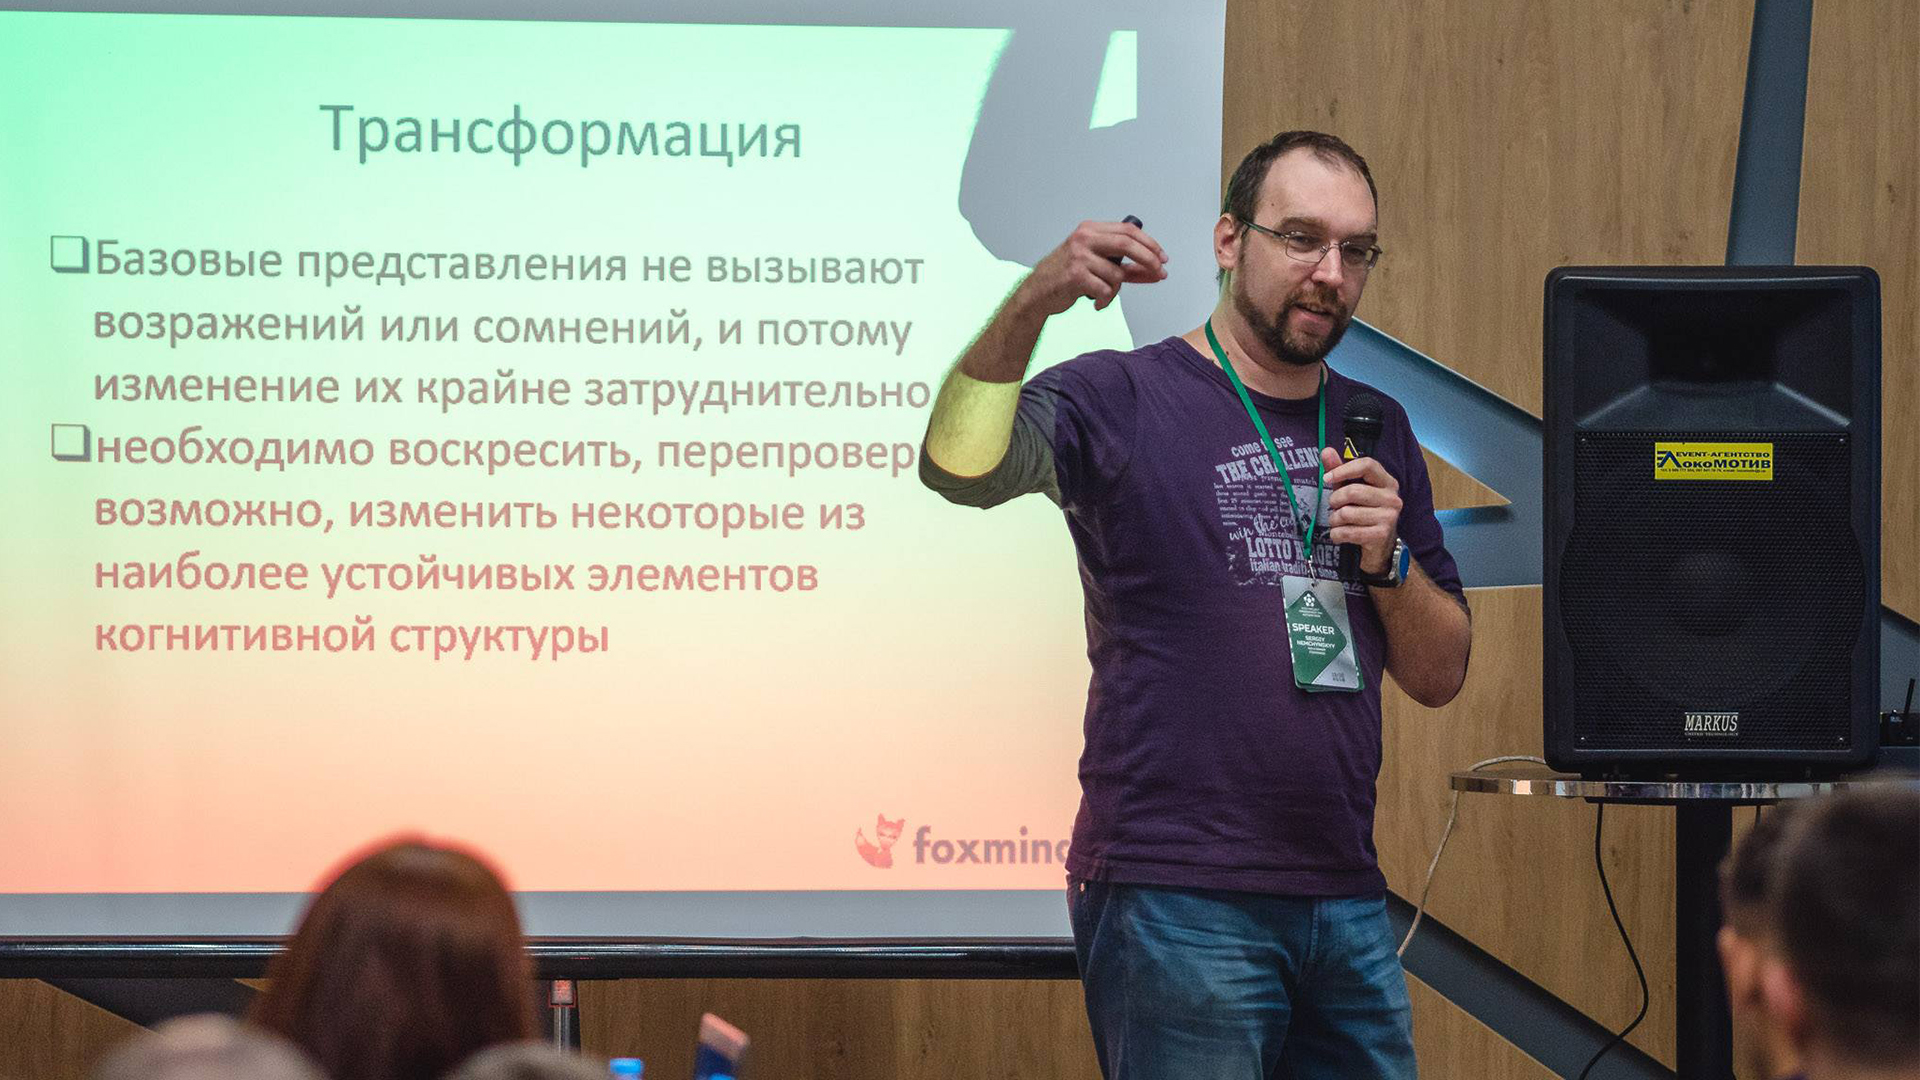 Выступление на конференции, фото Сергея Немчинского